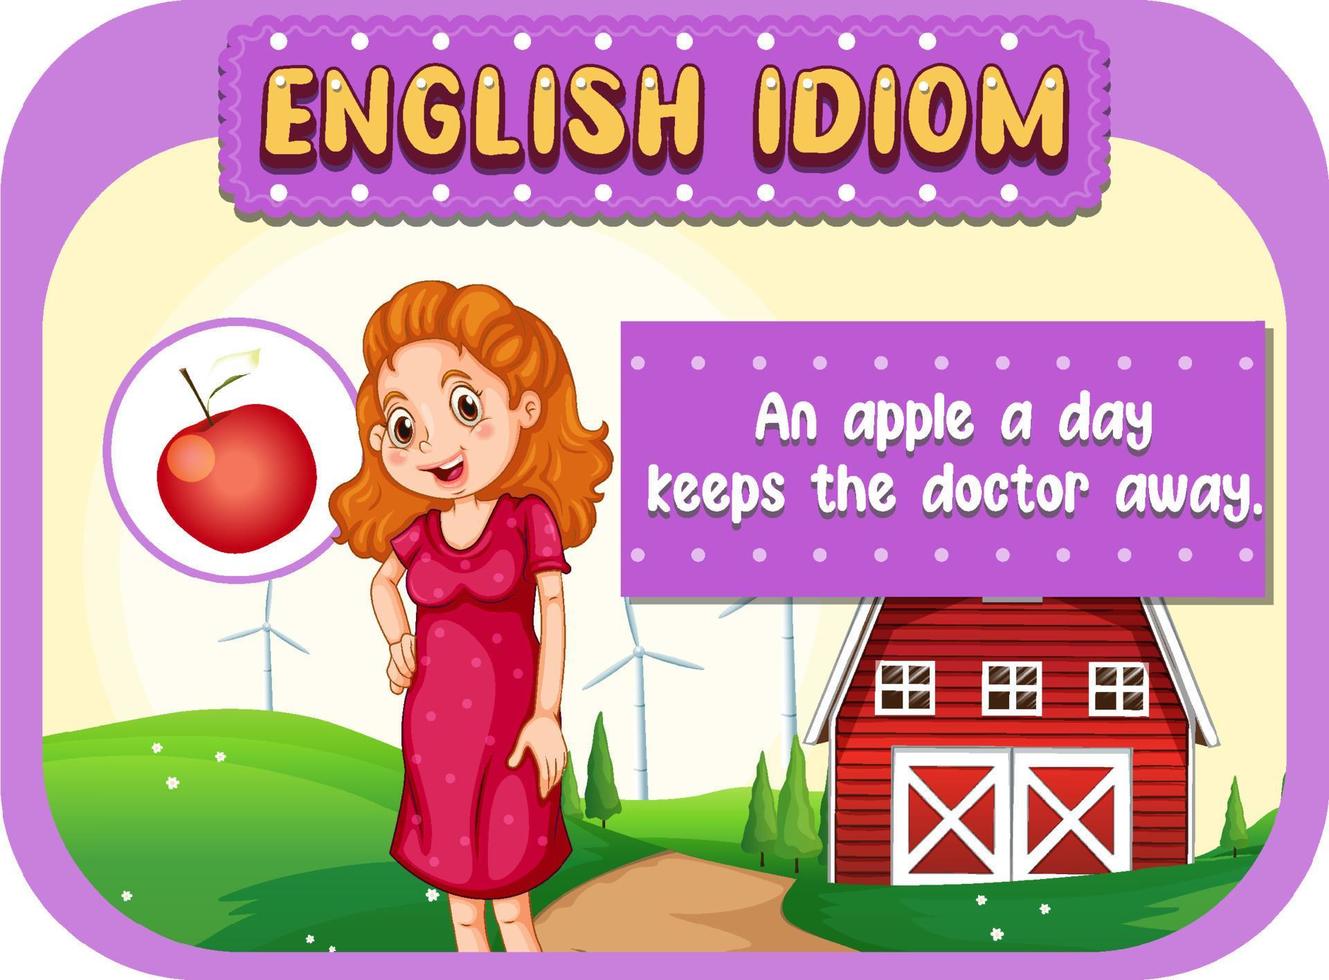 Engels idioom met een appel per dag houdt de dokter weg vector